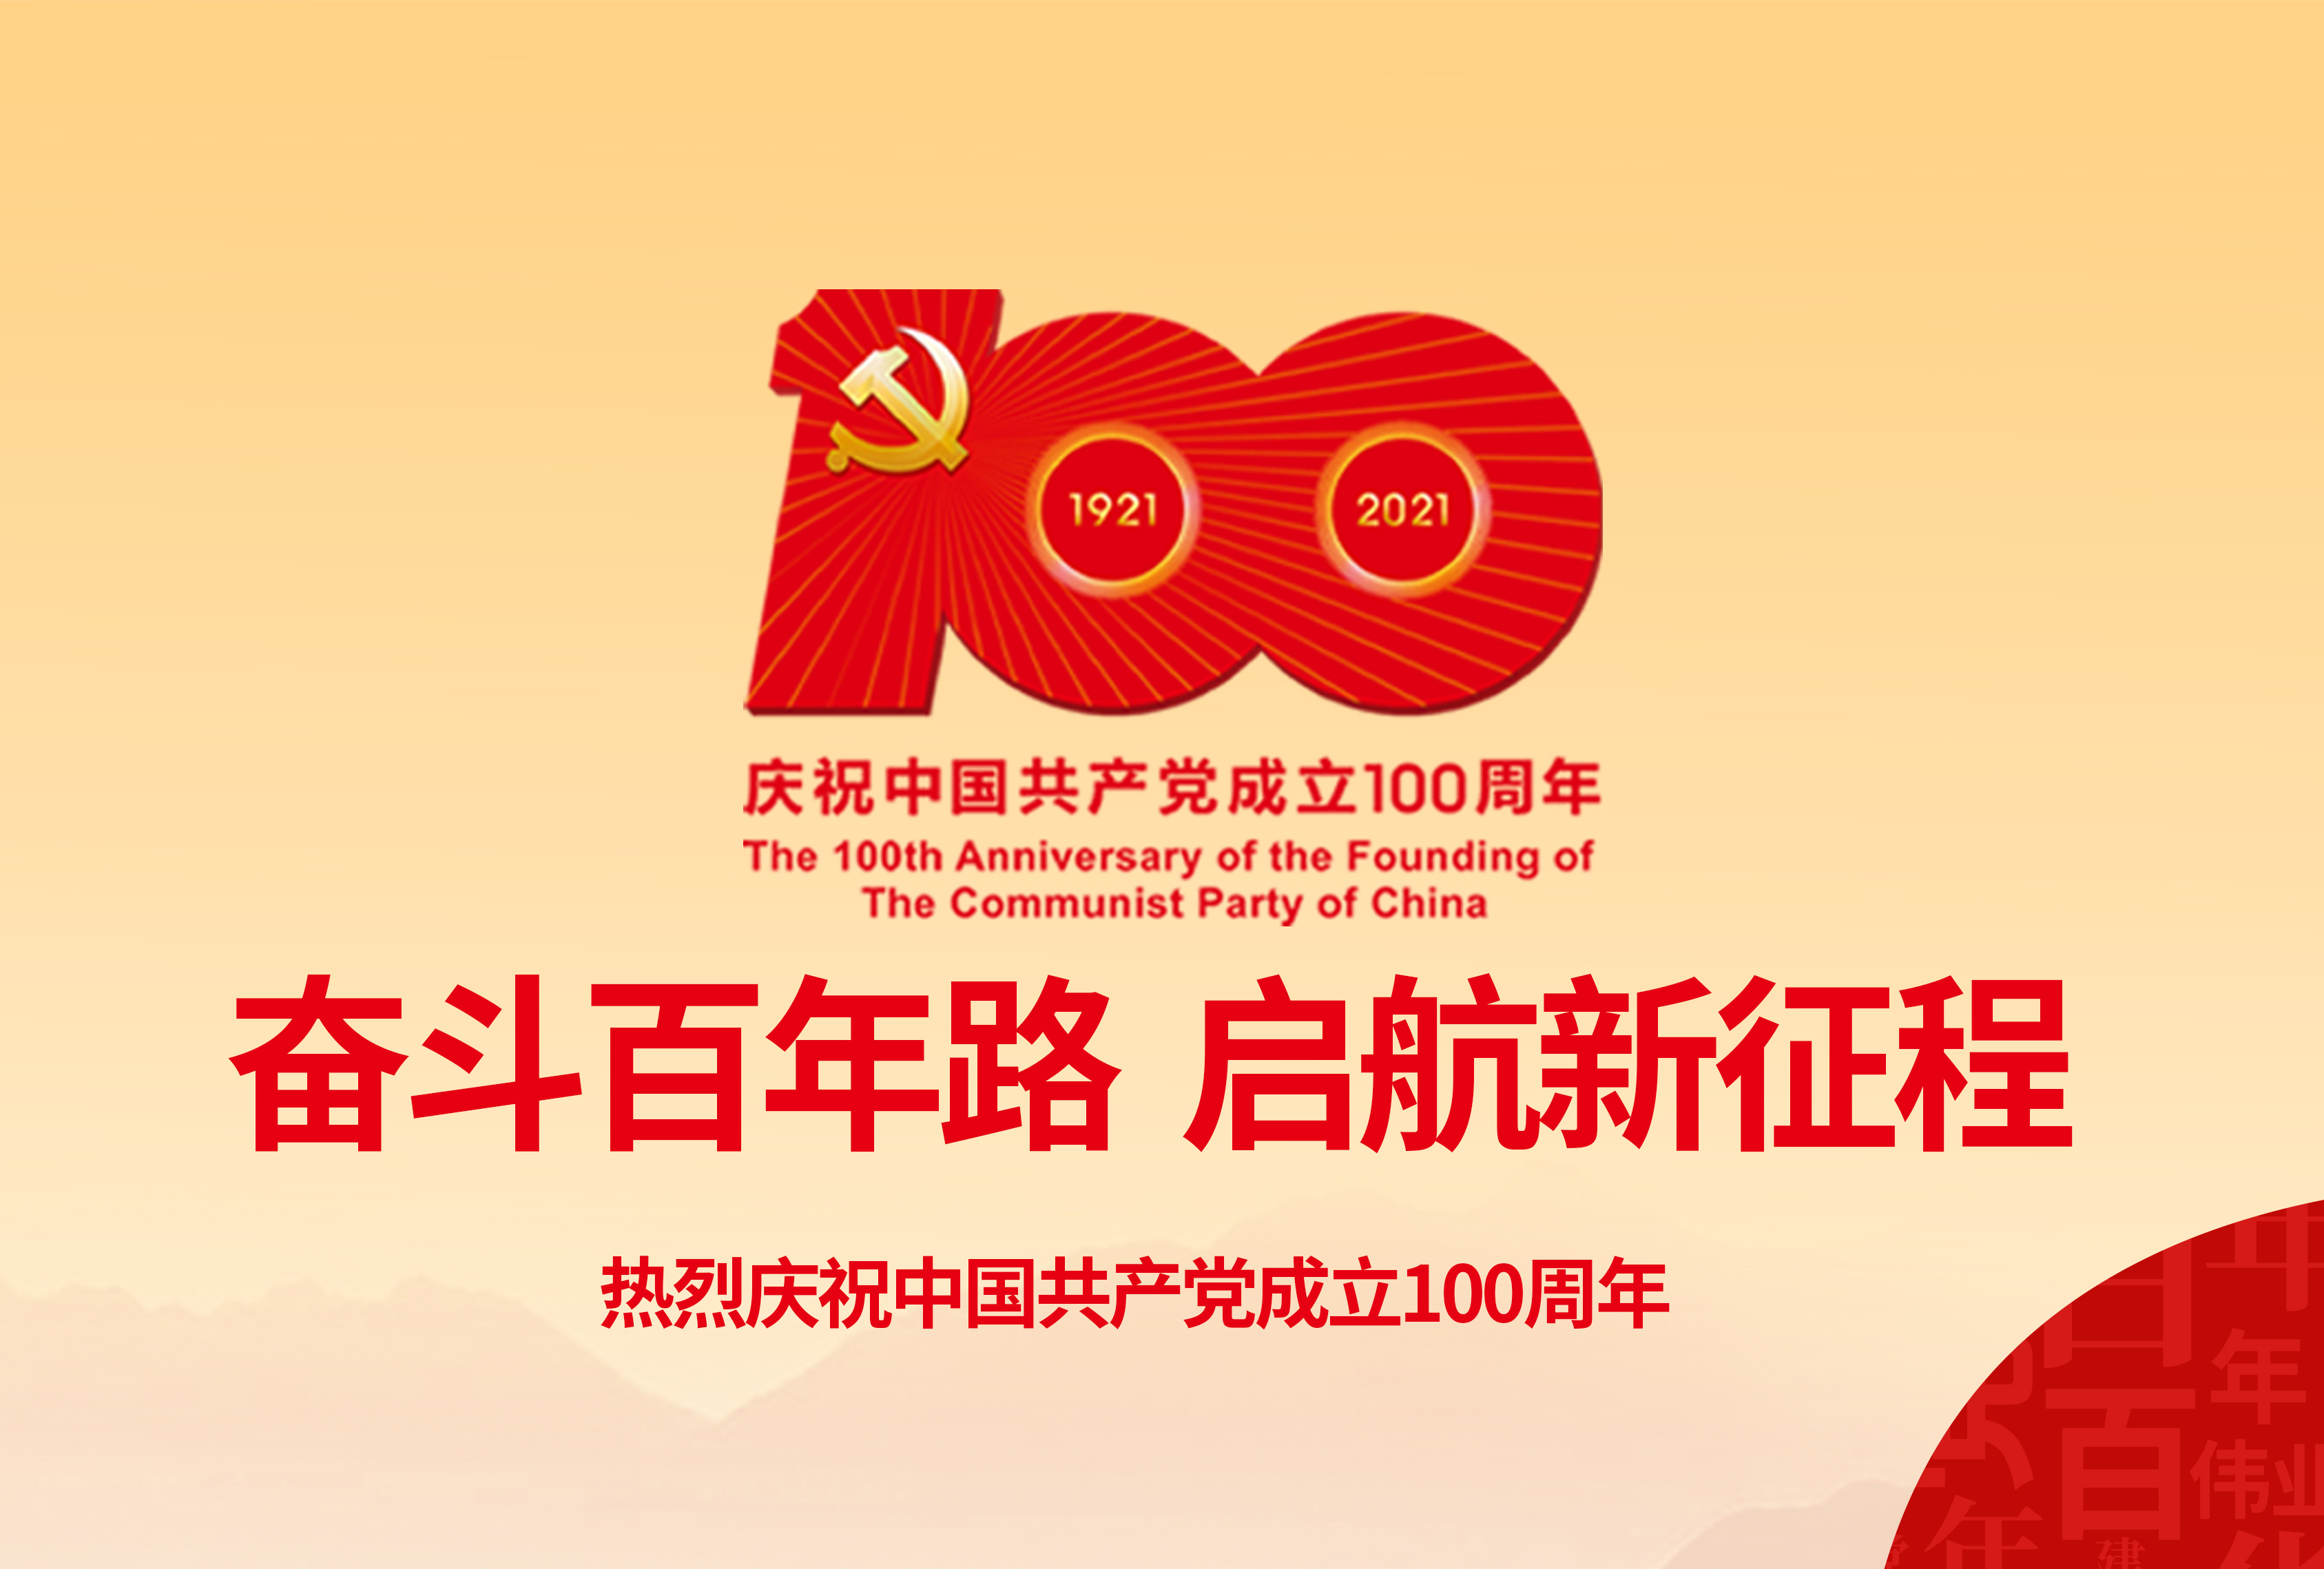 献礼建党节 奋进新时代 w66利来官方网站科技有限公司庆祝中国共产党建党100周年   